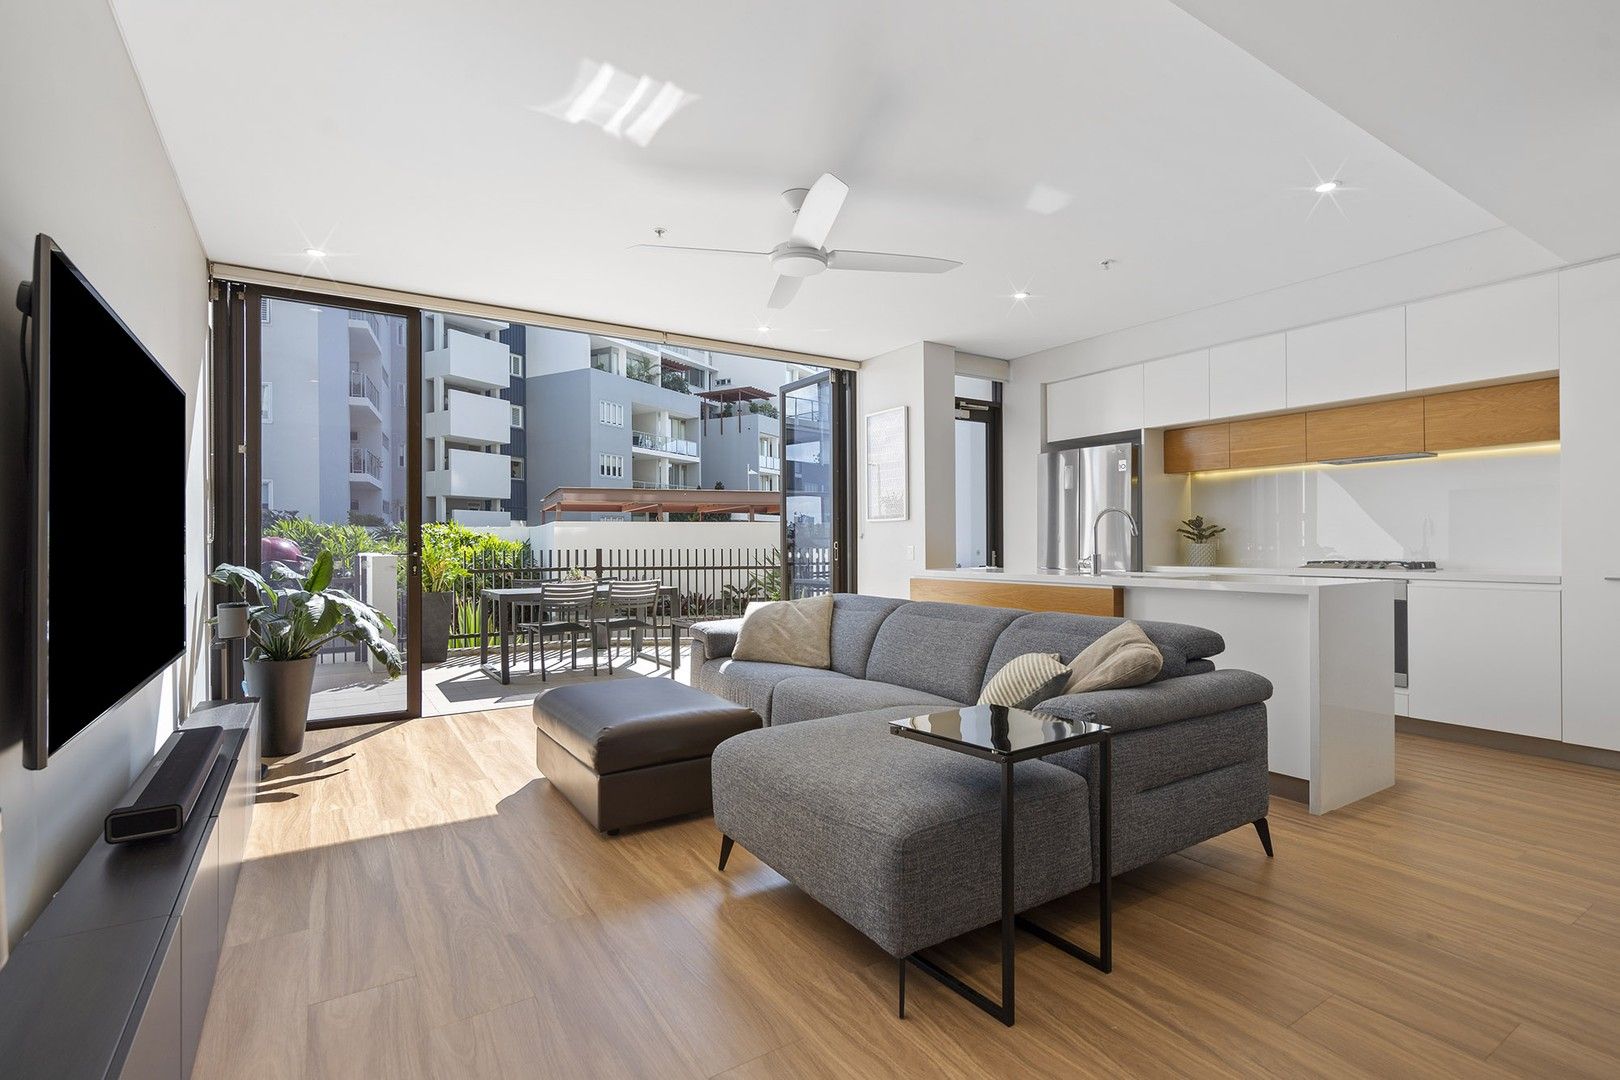 2 bedrooms Apartment / Unit / Flat in 012/37D Harbour Road HAMILTON QLD, 4007